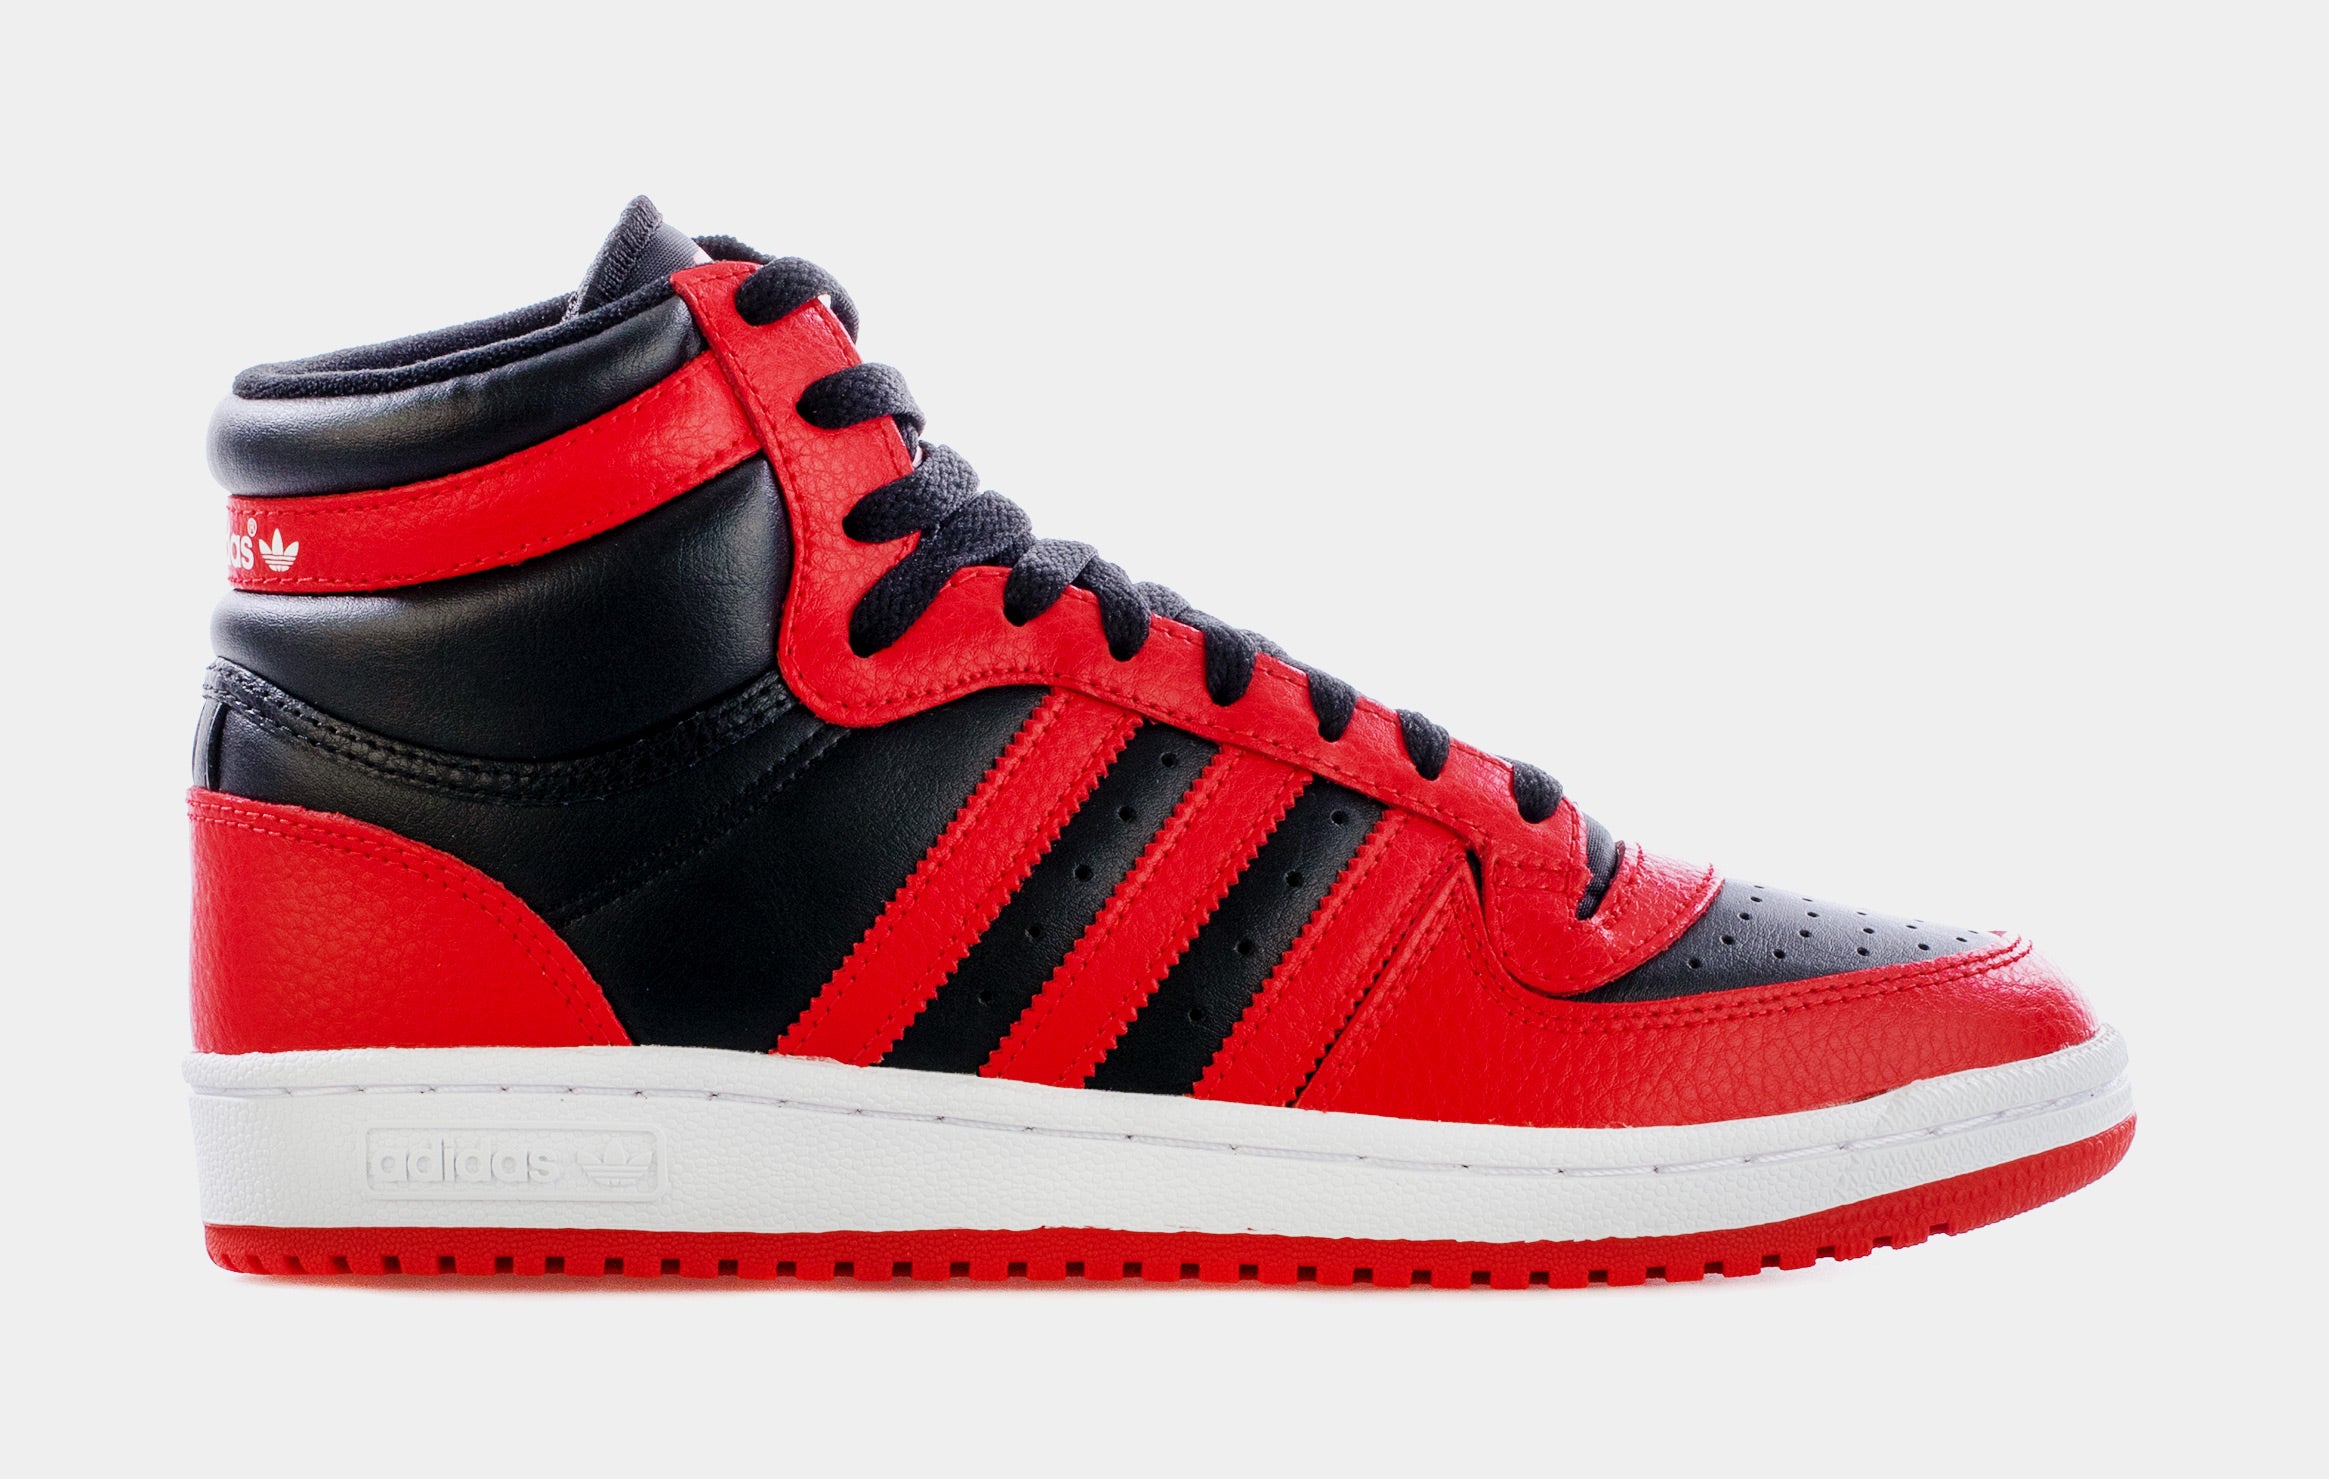 Adidas Men's Originals Top Ten RB Shoes: Black/Red